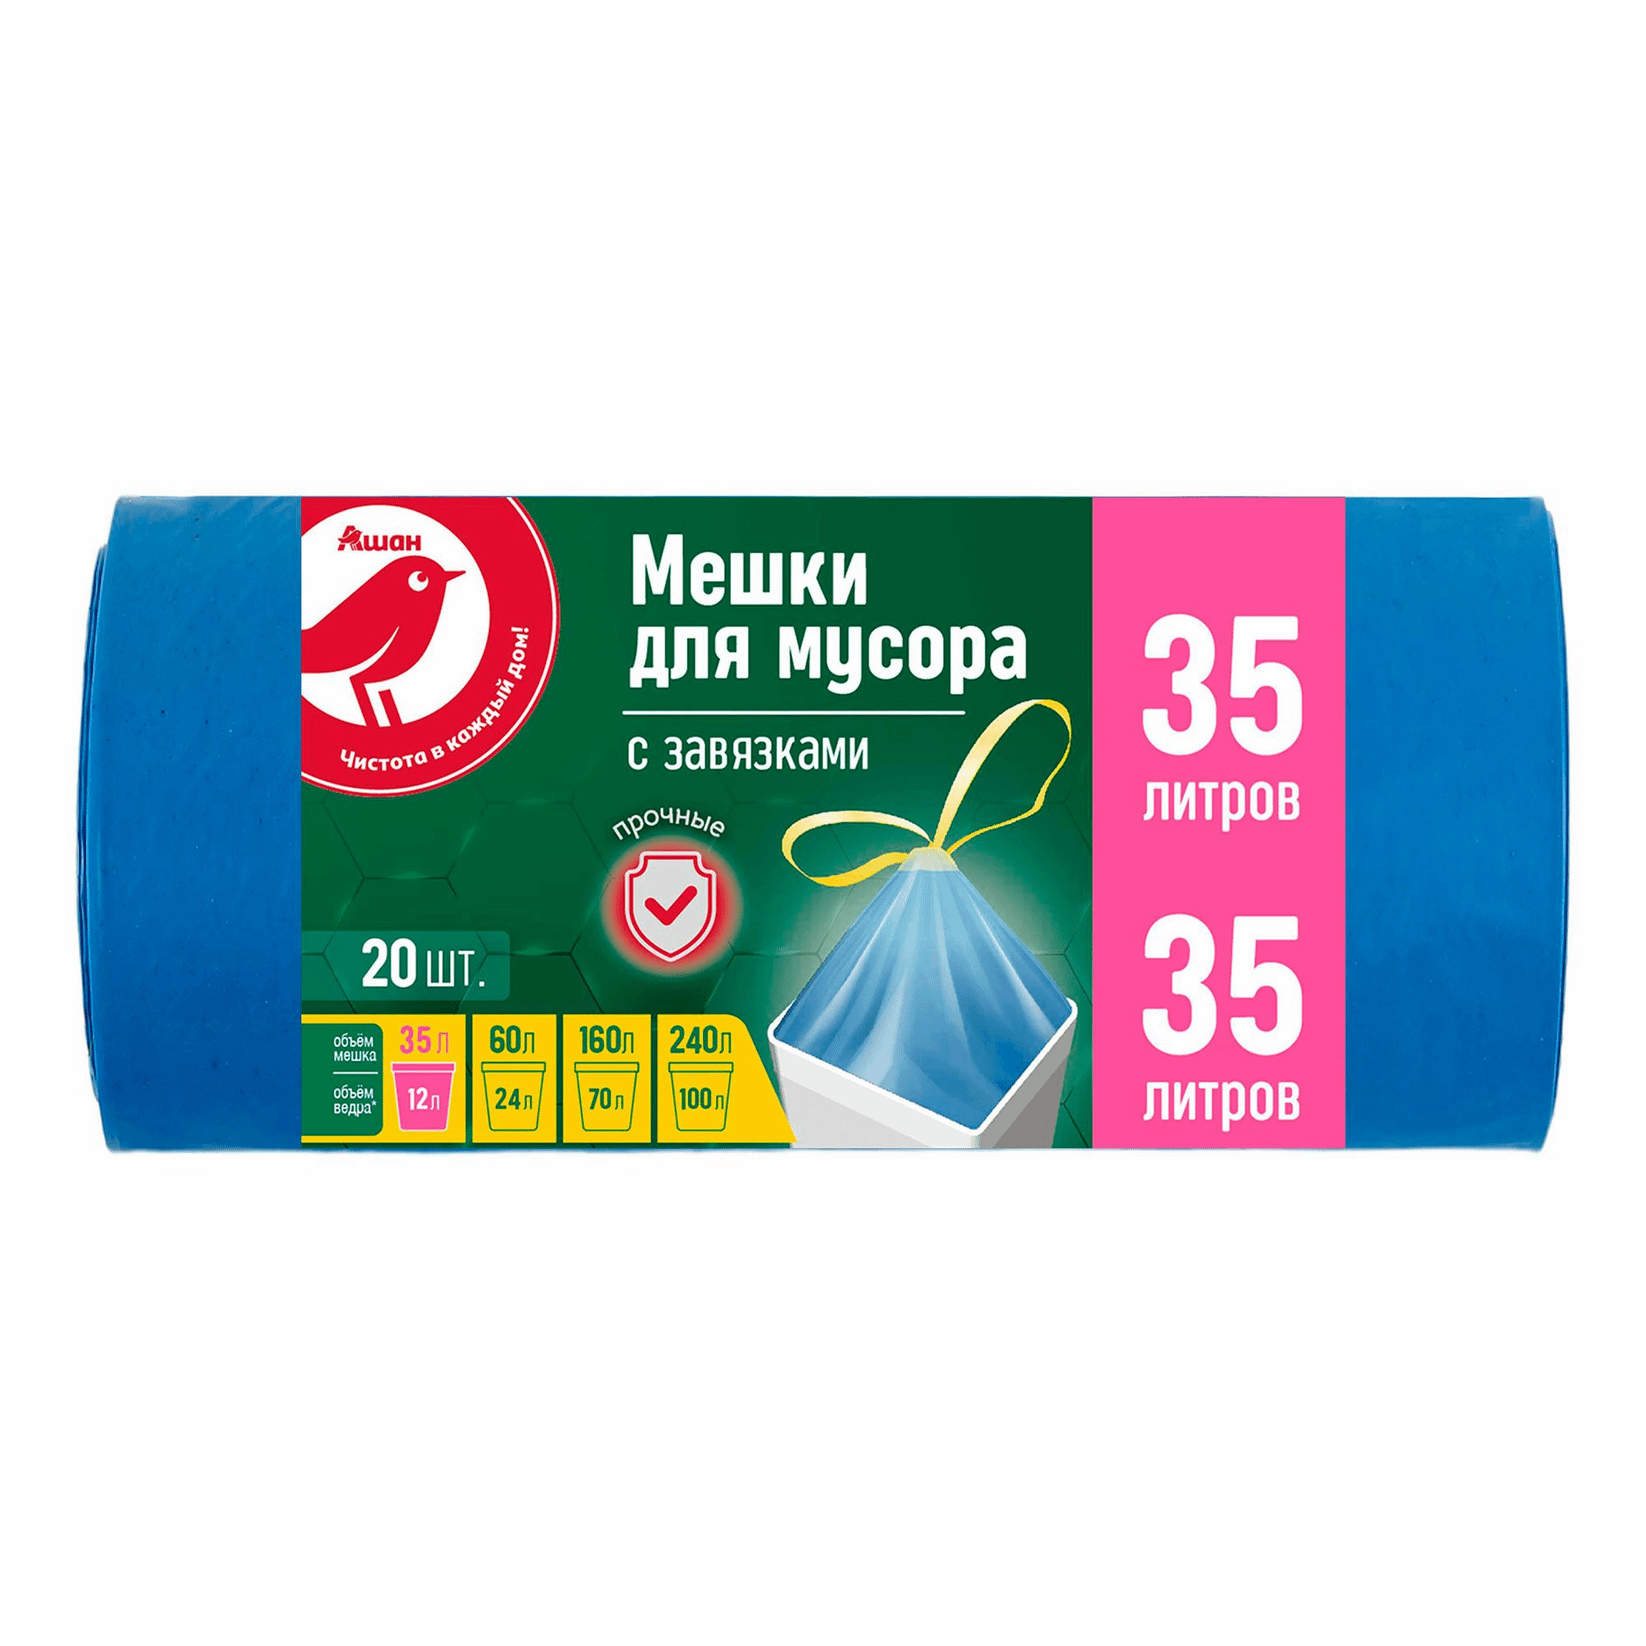 Мешки для мусора АШАН Красная птица с затяжками, 35 л, 20 шт.